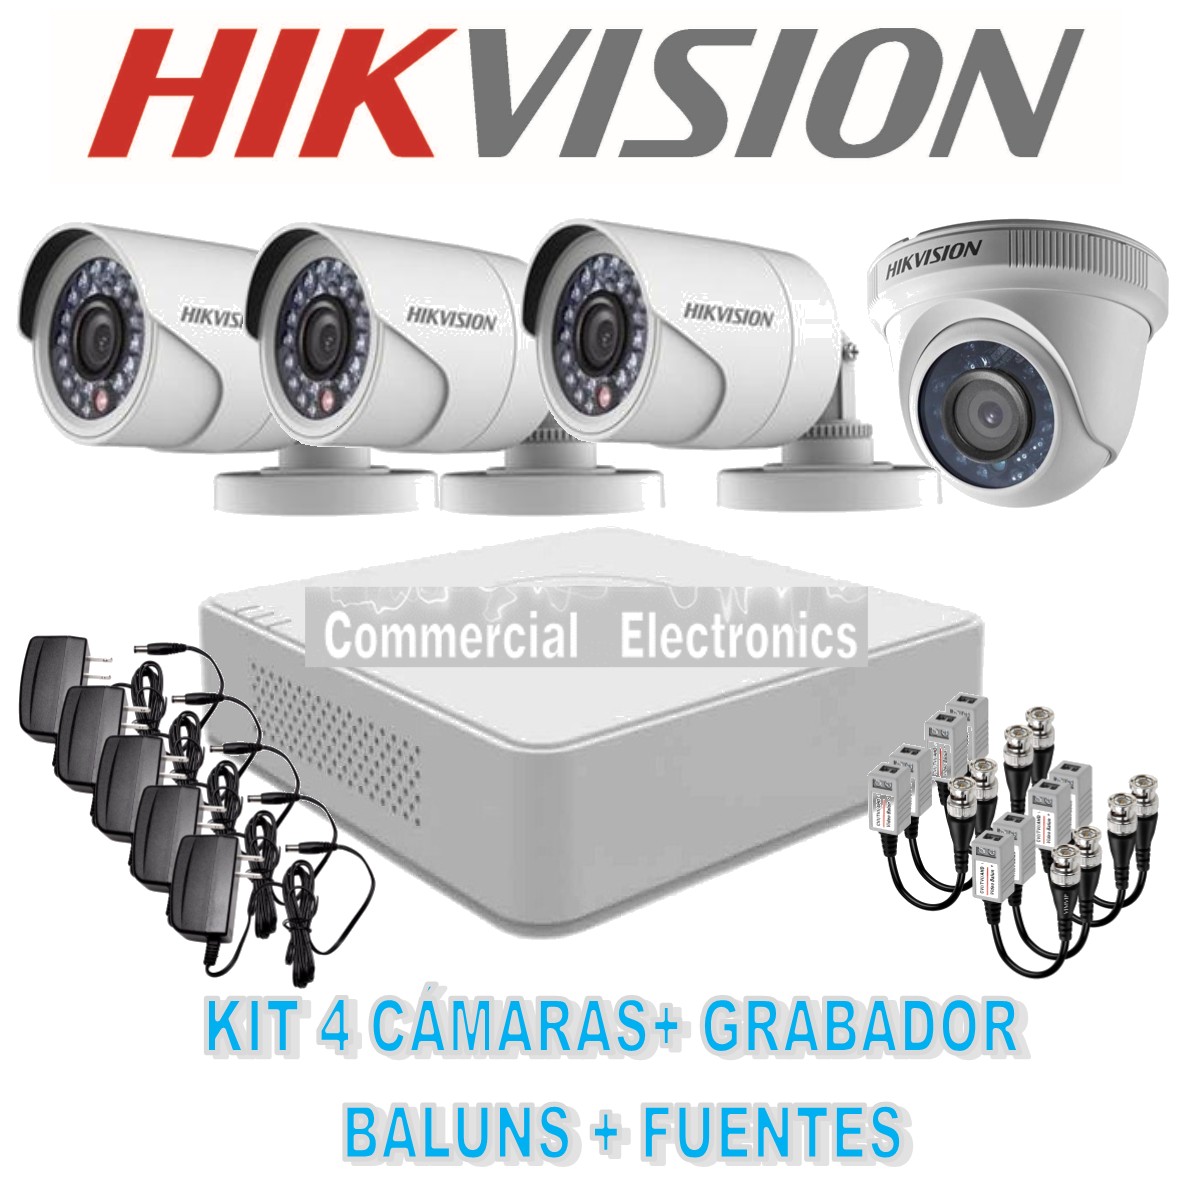 Fabricantes y proveedores de cámaras de videoconferencia HD MG104